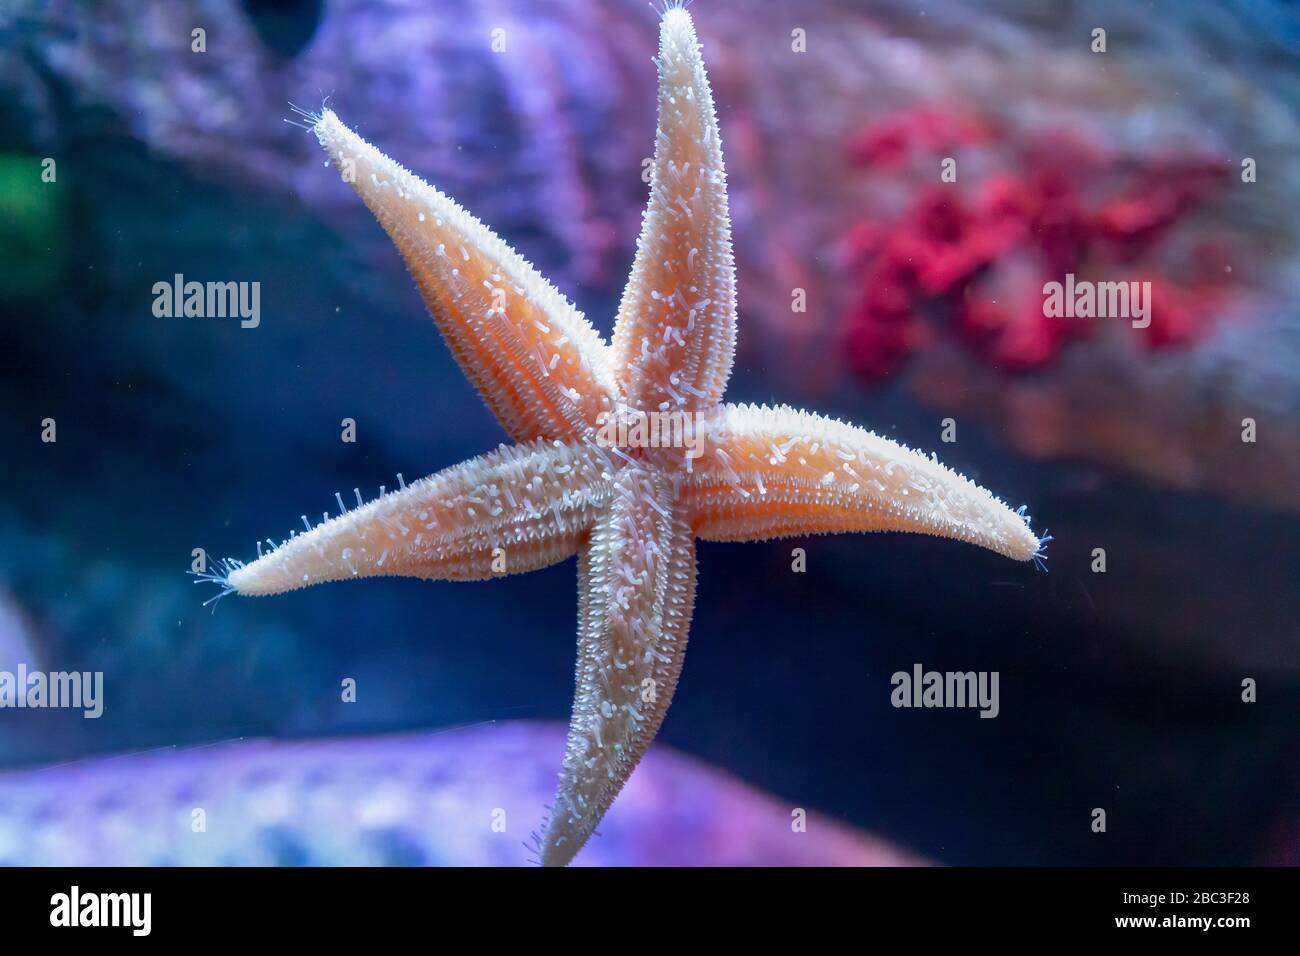 Northern Sea Star (Asterias vulgaris)